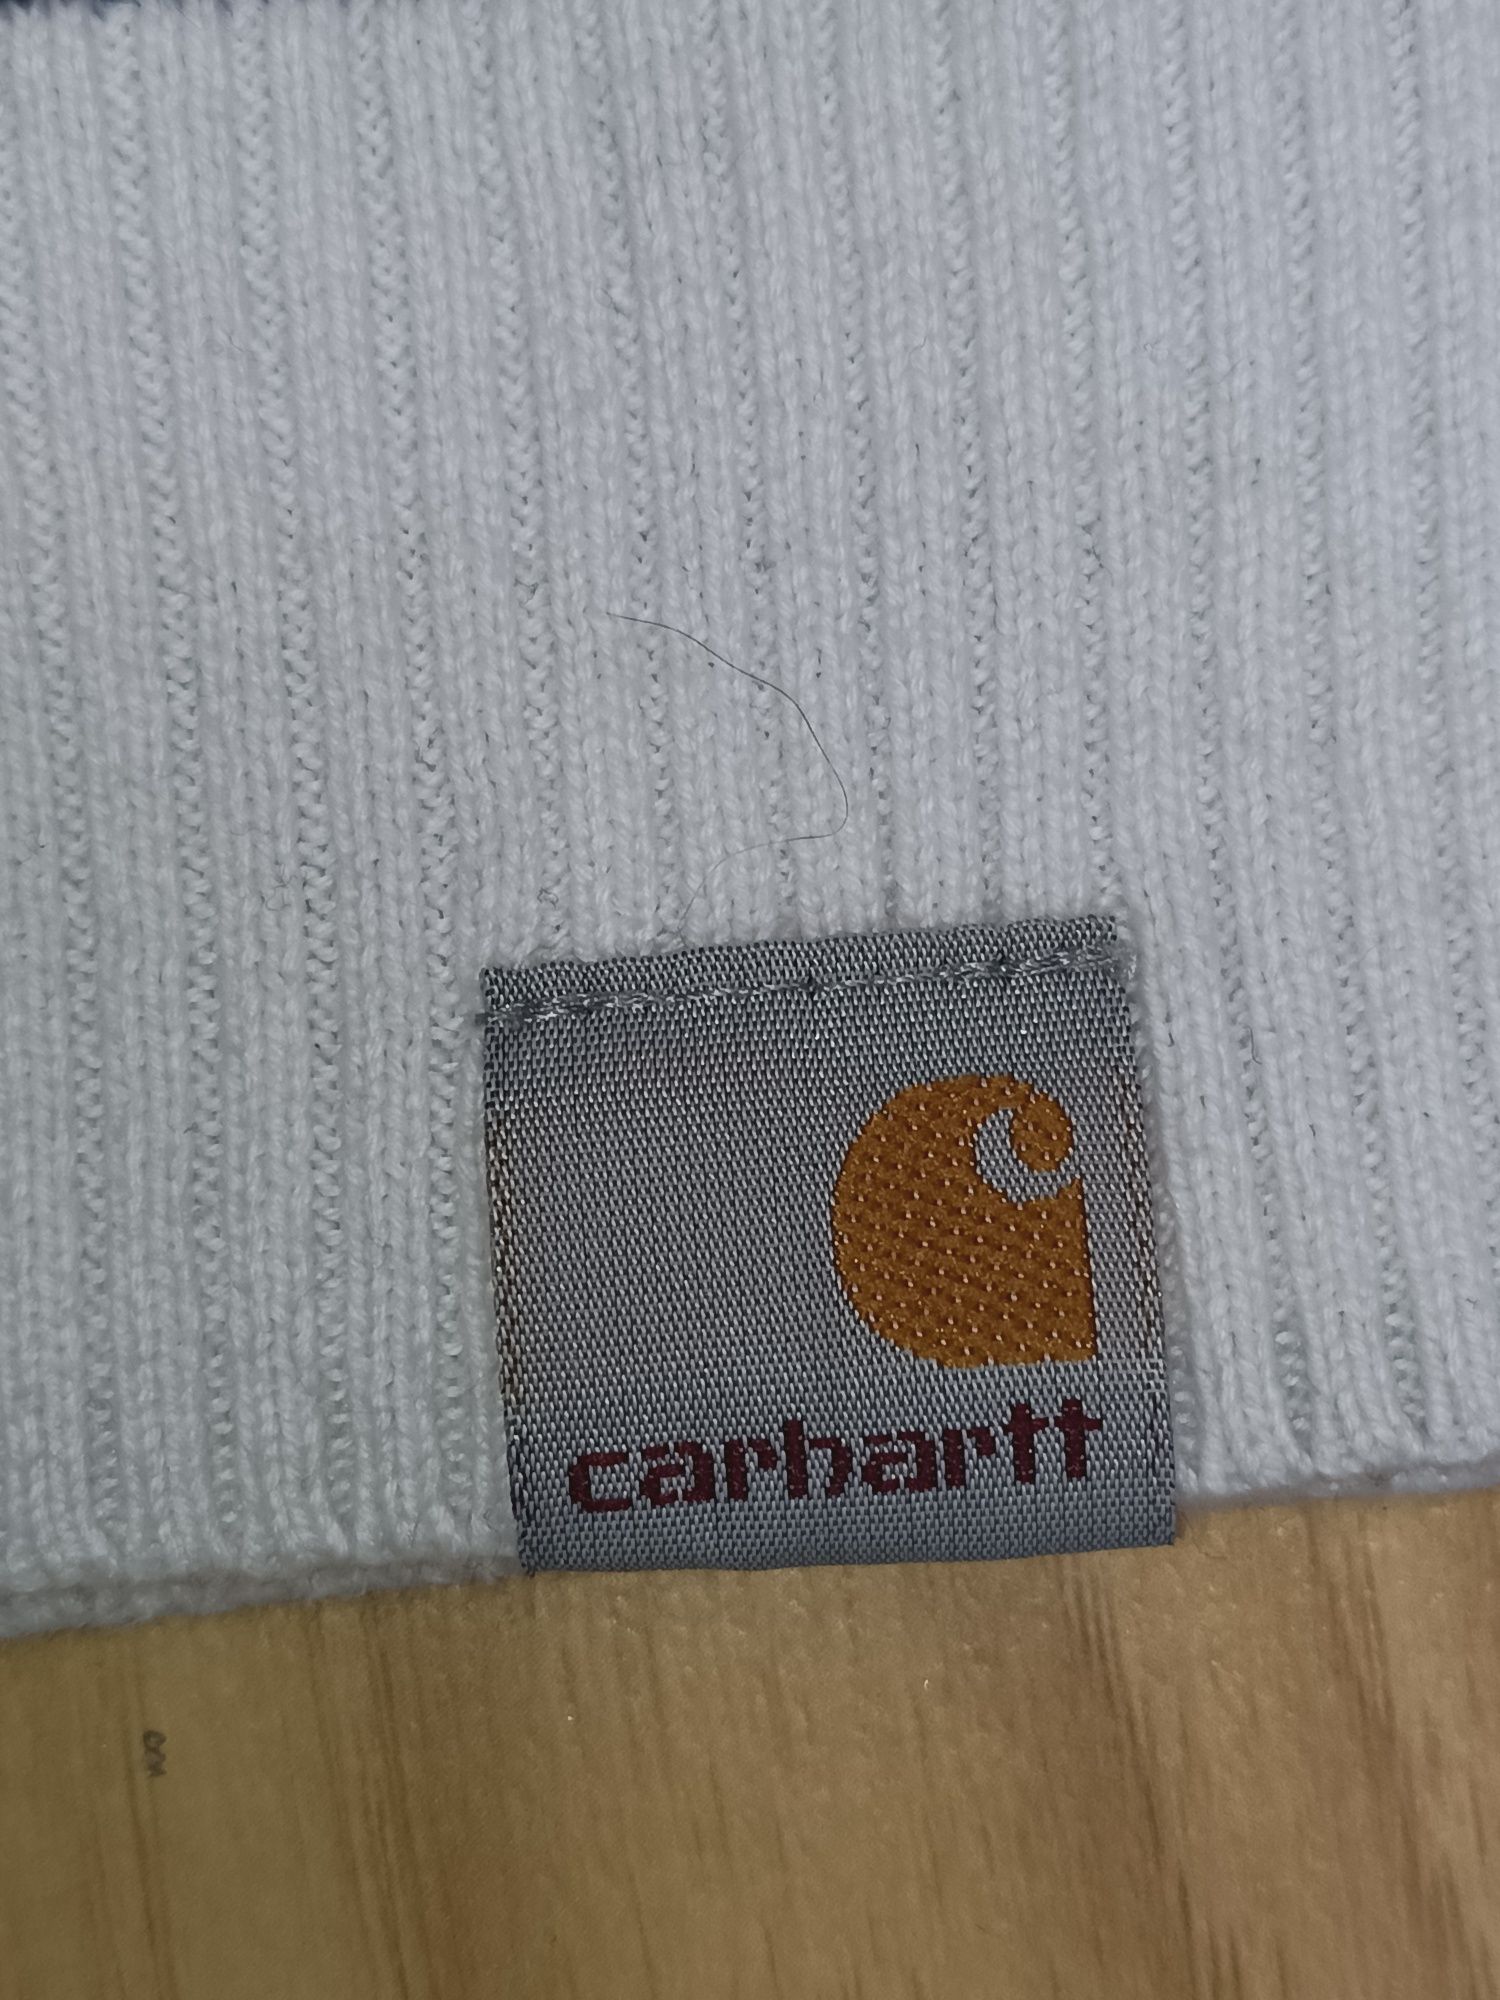 Carhartt W'Robie Sweater